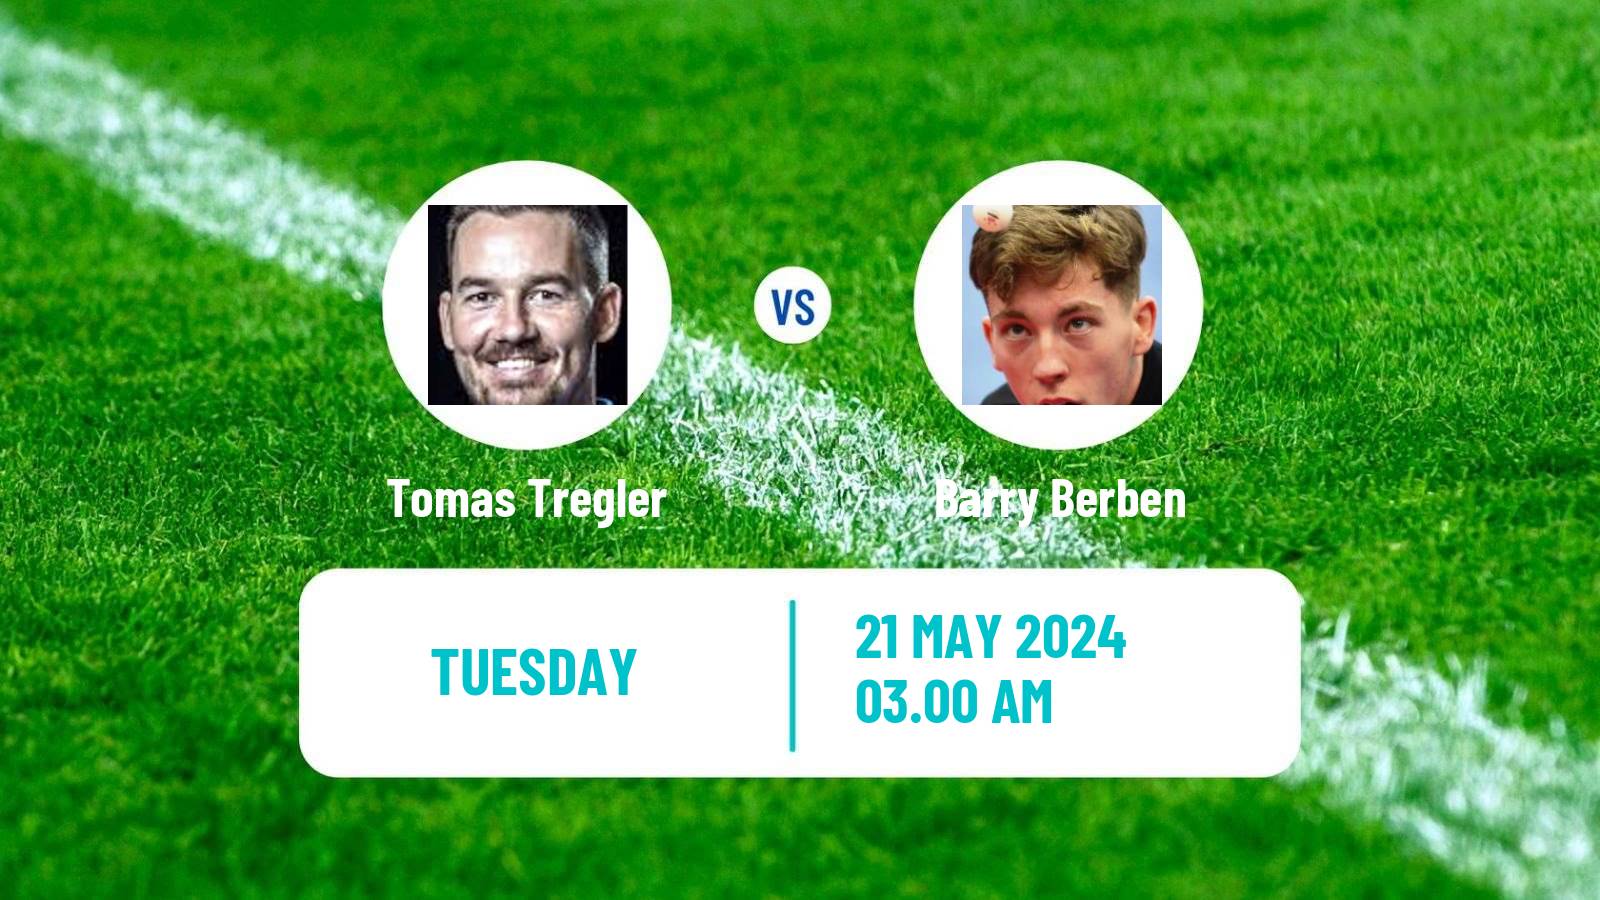 Table tennis Tt Star Series Men Tomas Tregler - Barry Berben